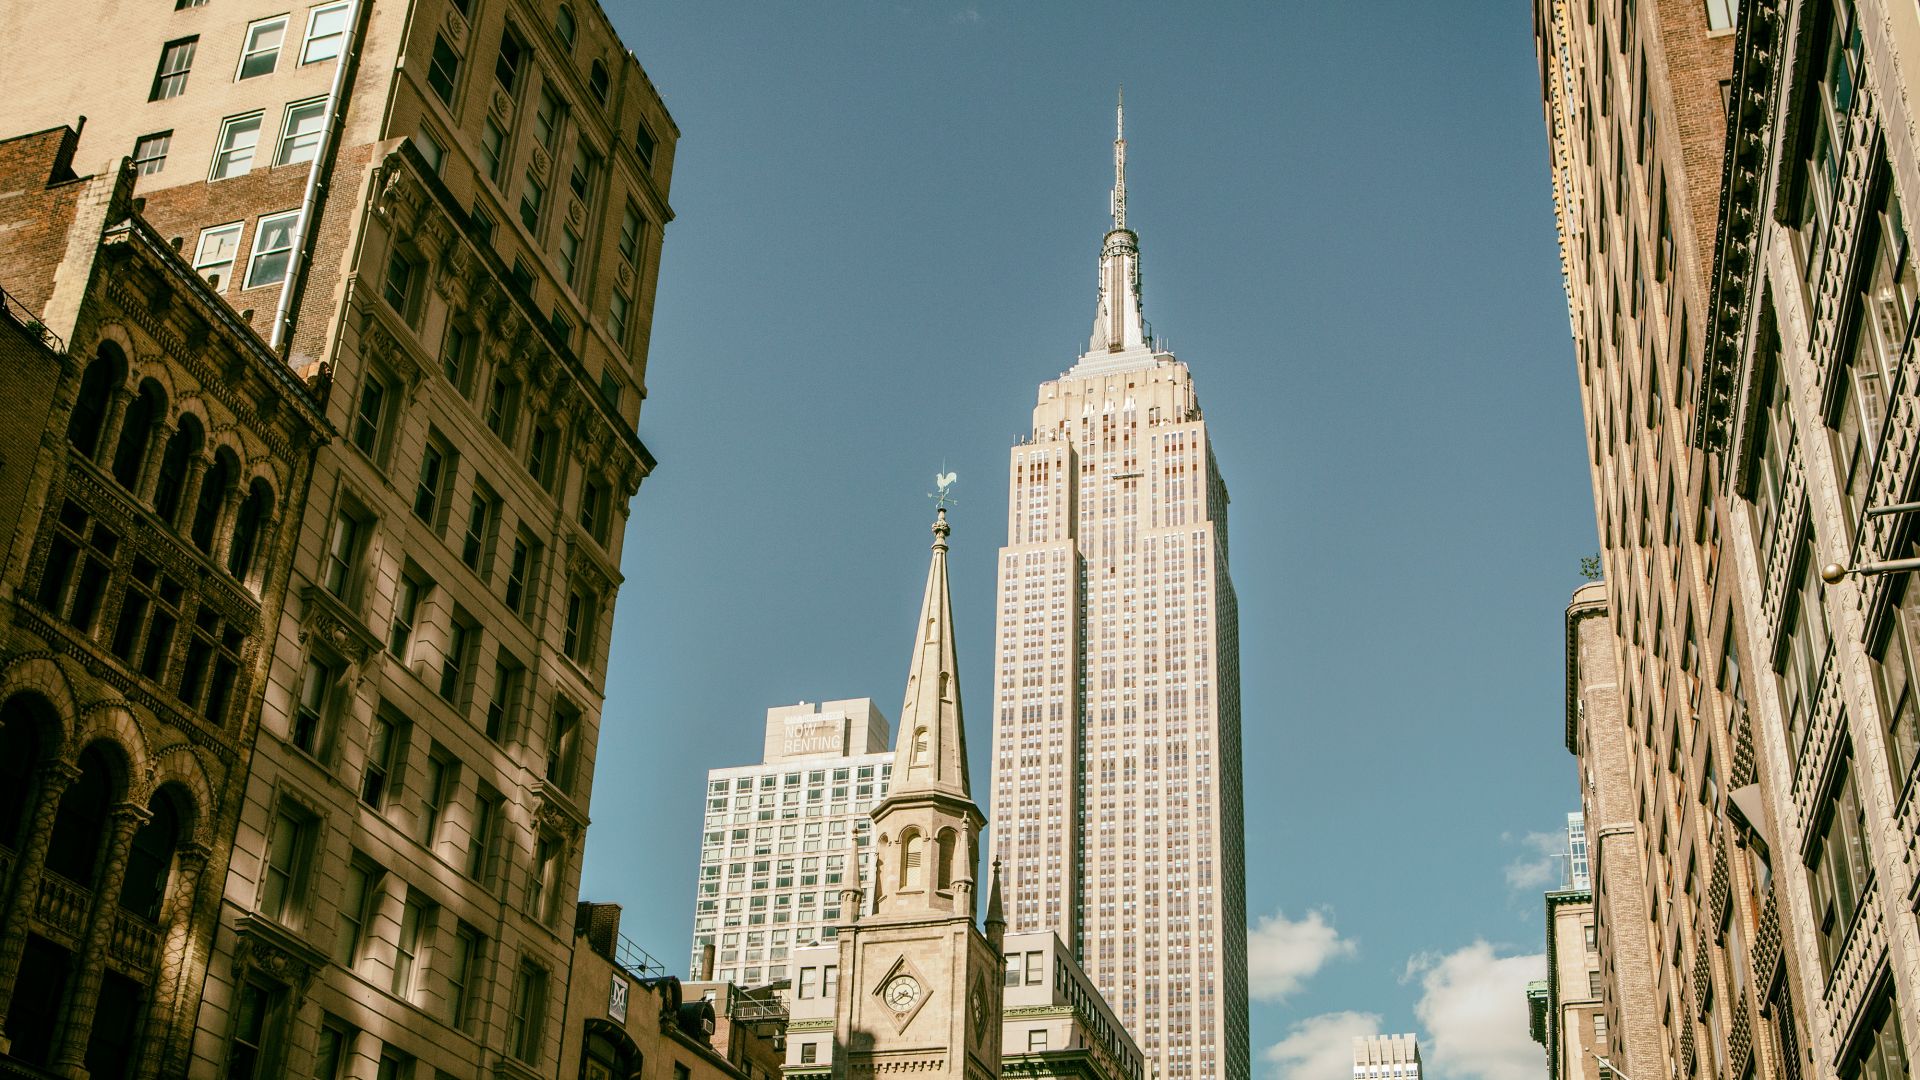 Эмпайр Стейт Билдинг, Манхэттен, Нью-Йорк, Empire State Building, Manhattan, New York City (horizontal)